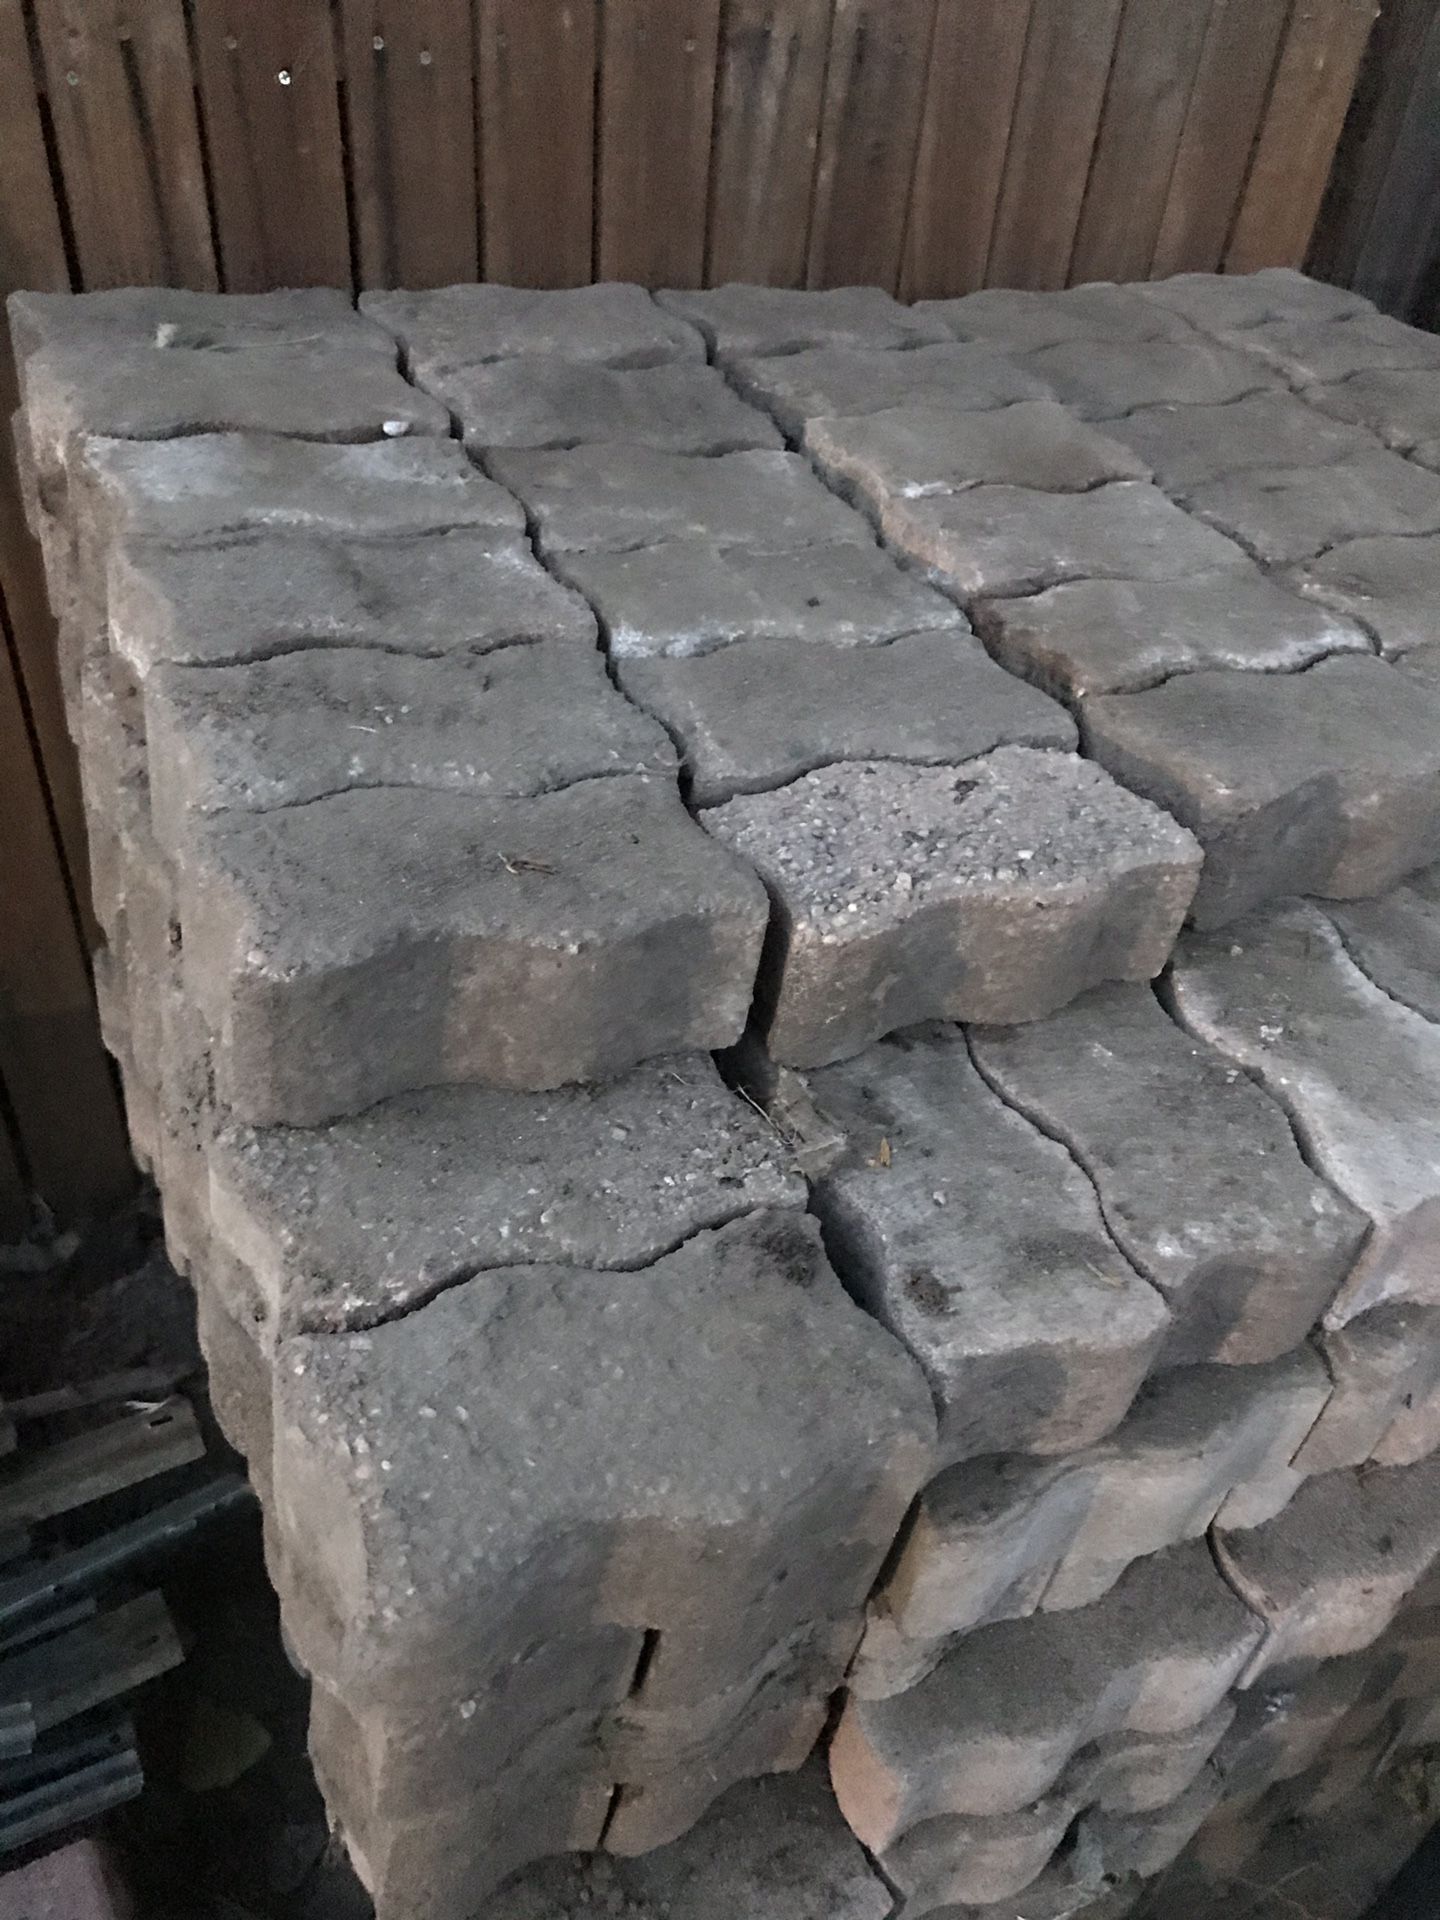 Concrete paver bricks